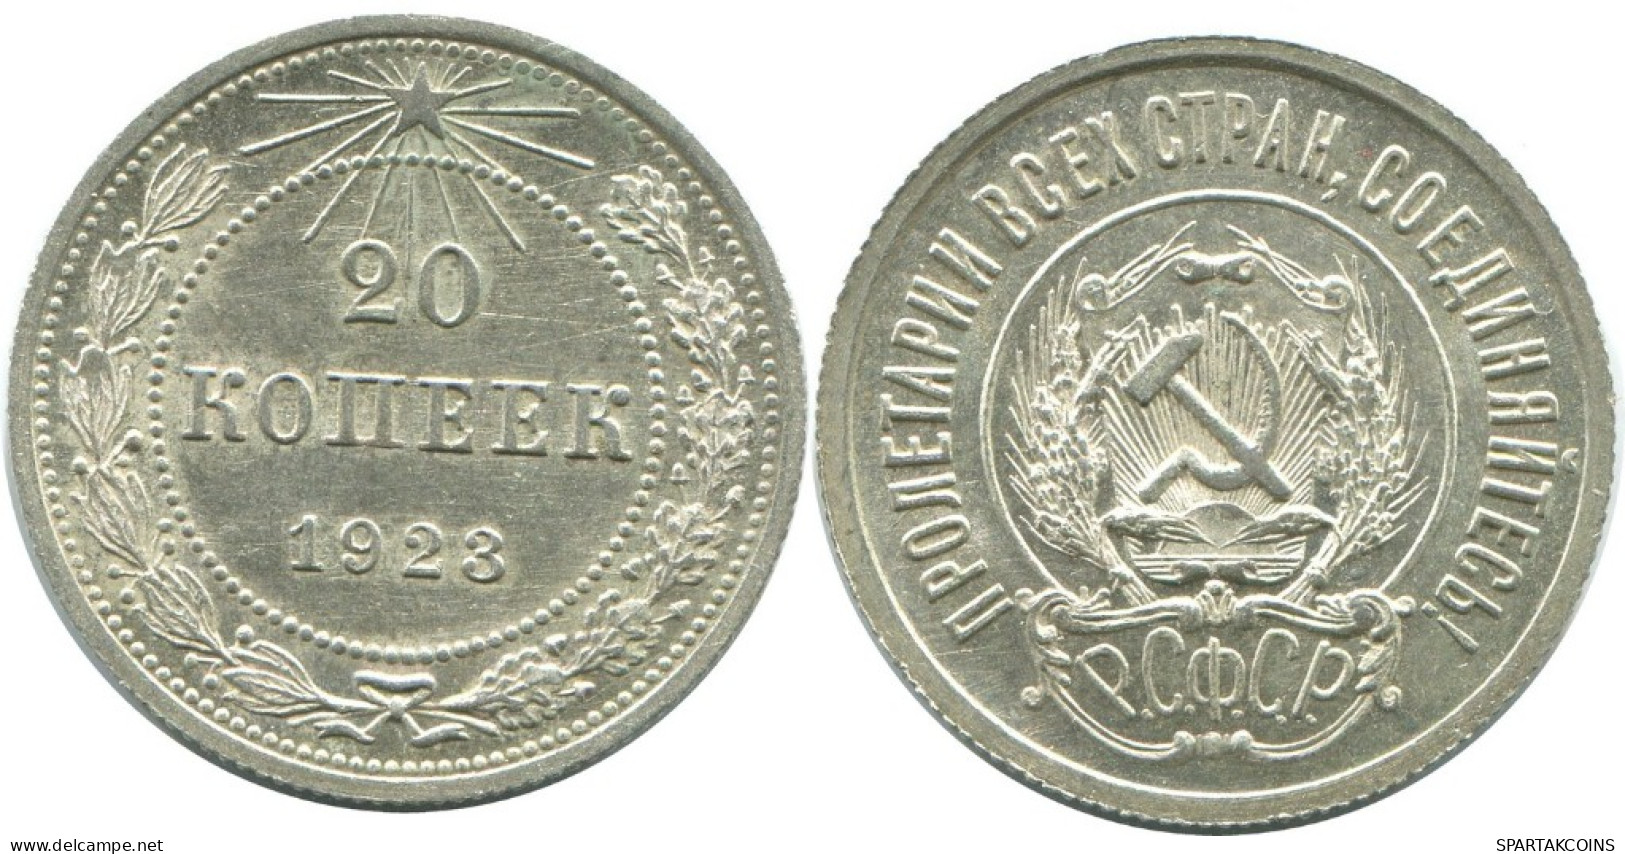 20 KOPEKS 1923 RUSSIA RSFSR SILVER Coin HIGH GRADE #AF621.U.A - Russland